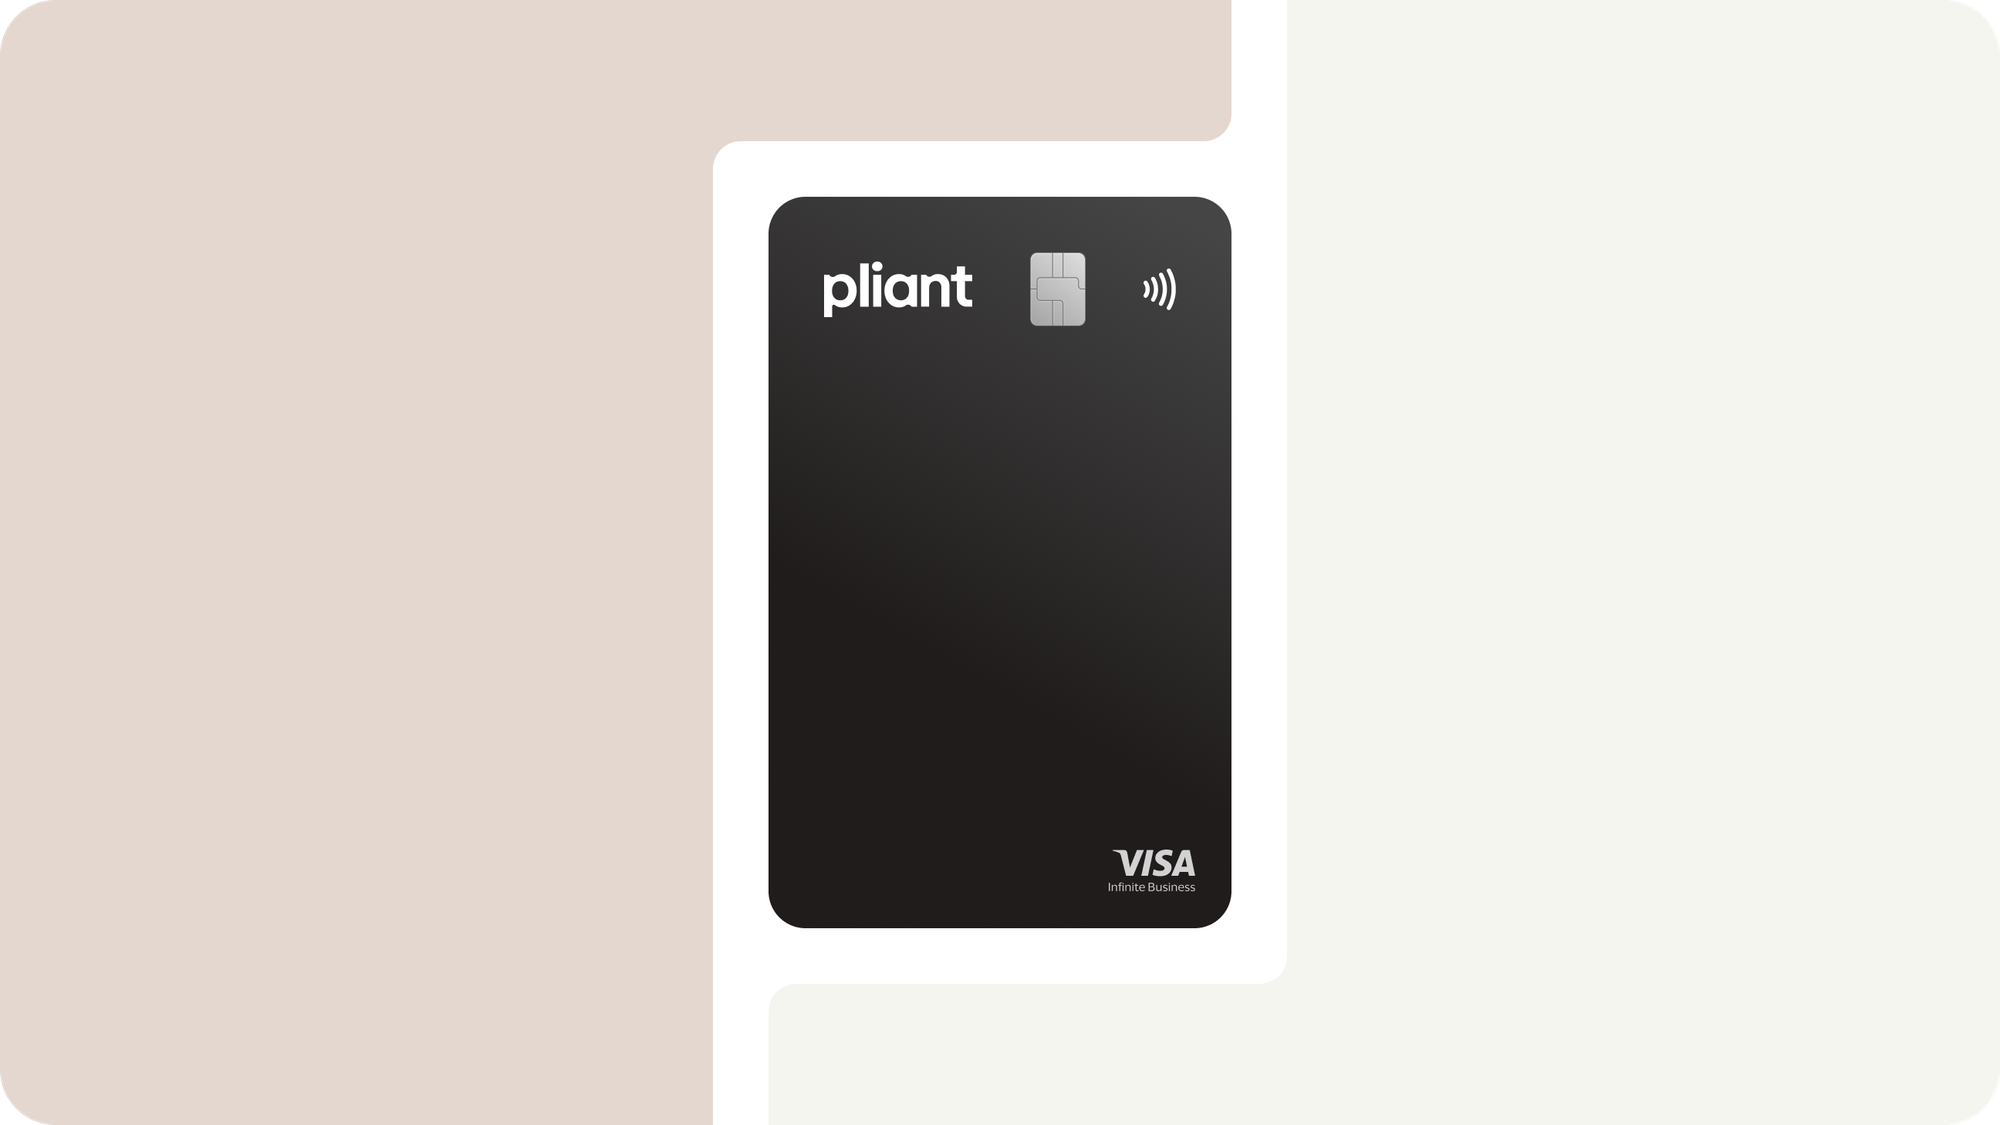 Mit der VISA Infinite Card hat Pliant die exklusivste Karte im Business-Kartenportfolio von Visa im Angebot.